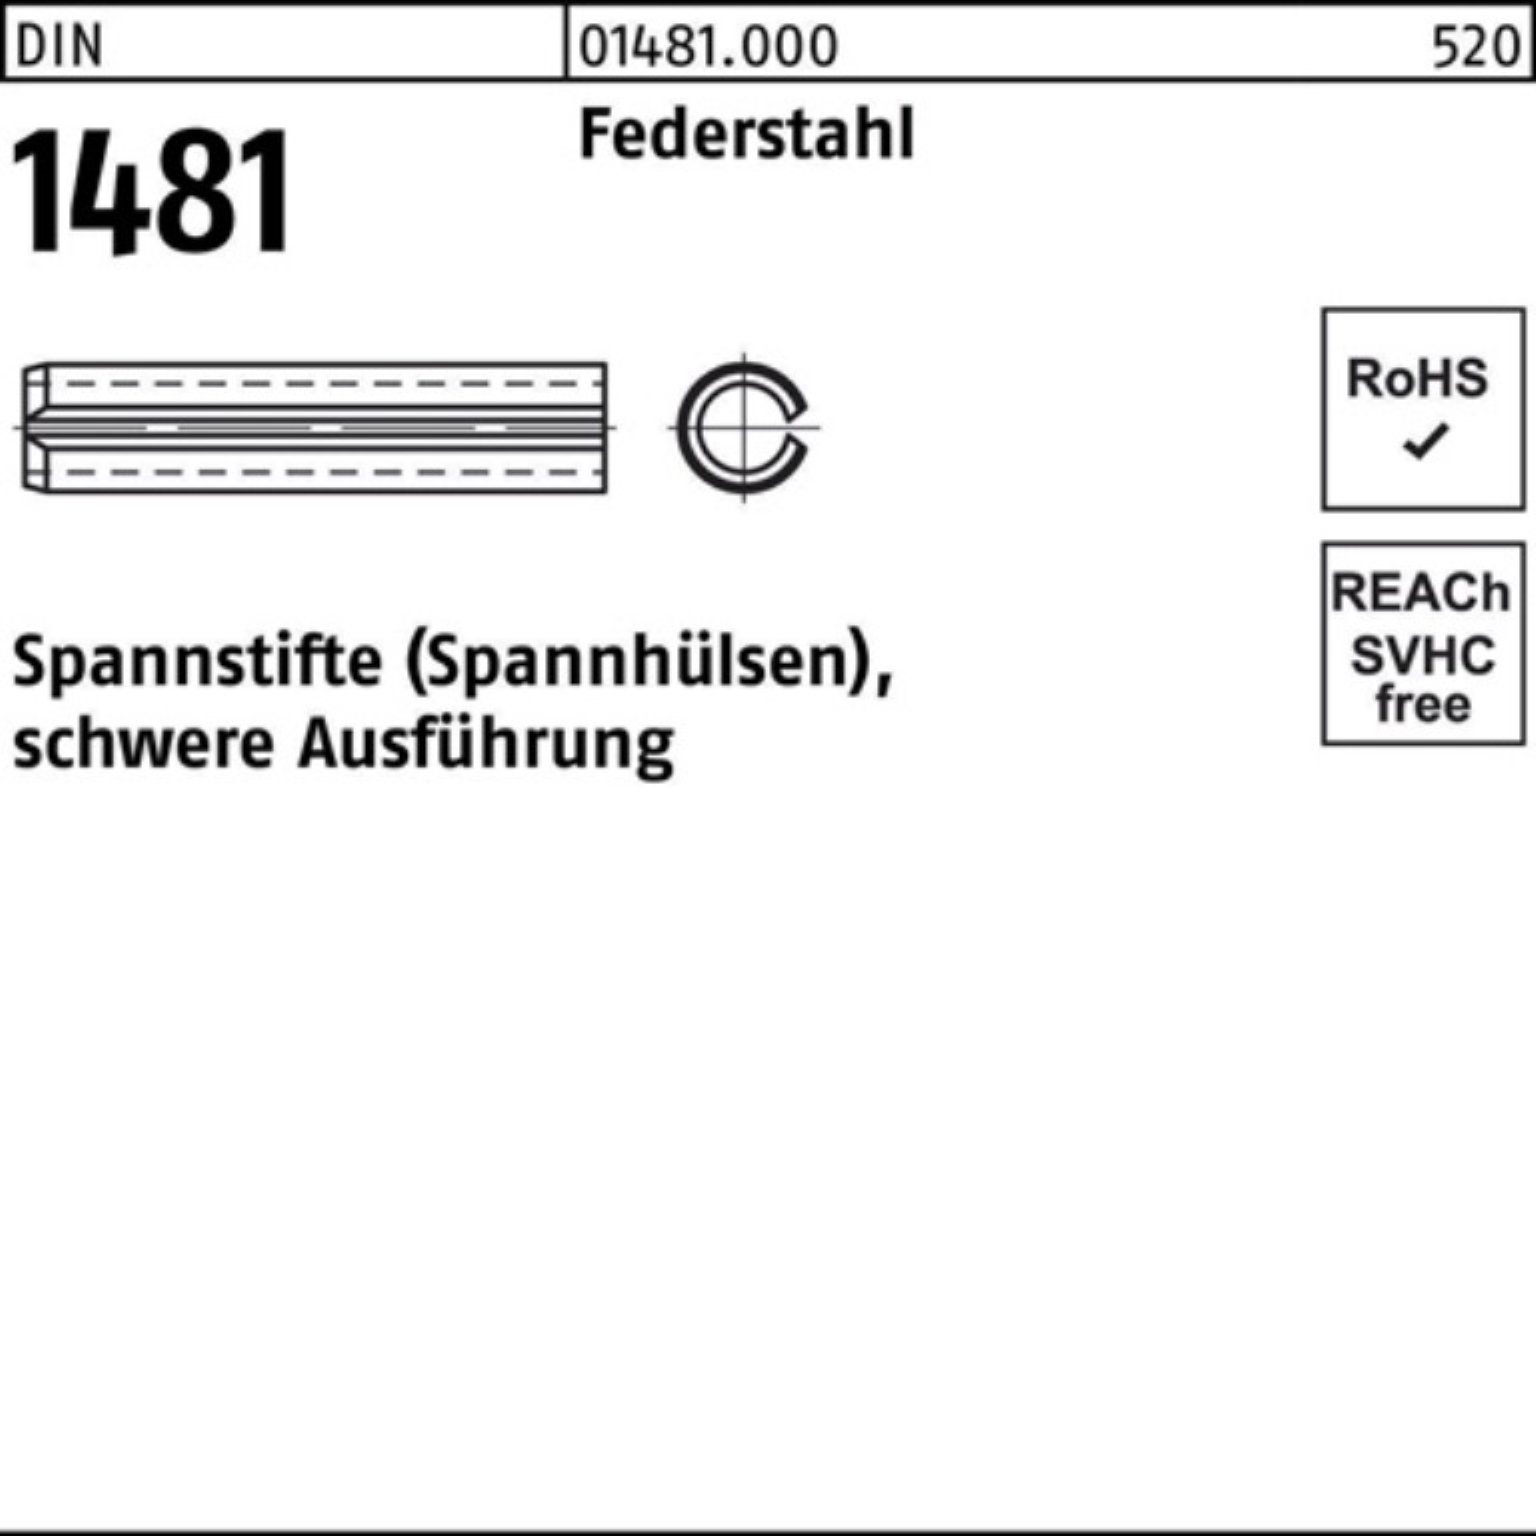 Reyher Spannstift 100er Pack Spannstift DIN 1481 5x 14 Federstahl schwere Ausführung 10